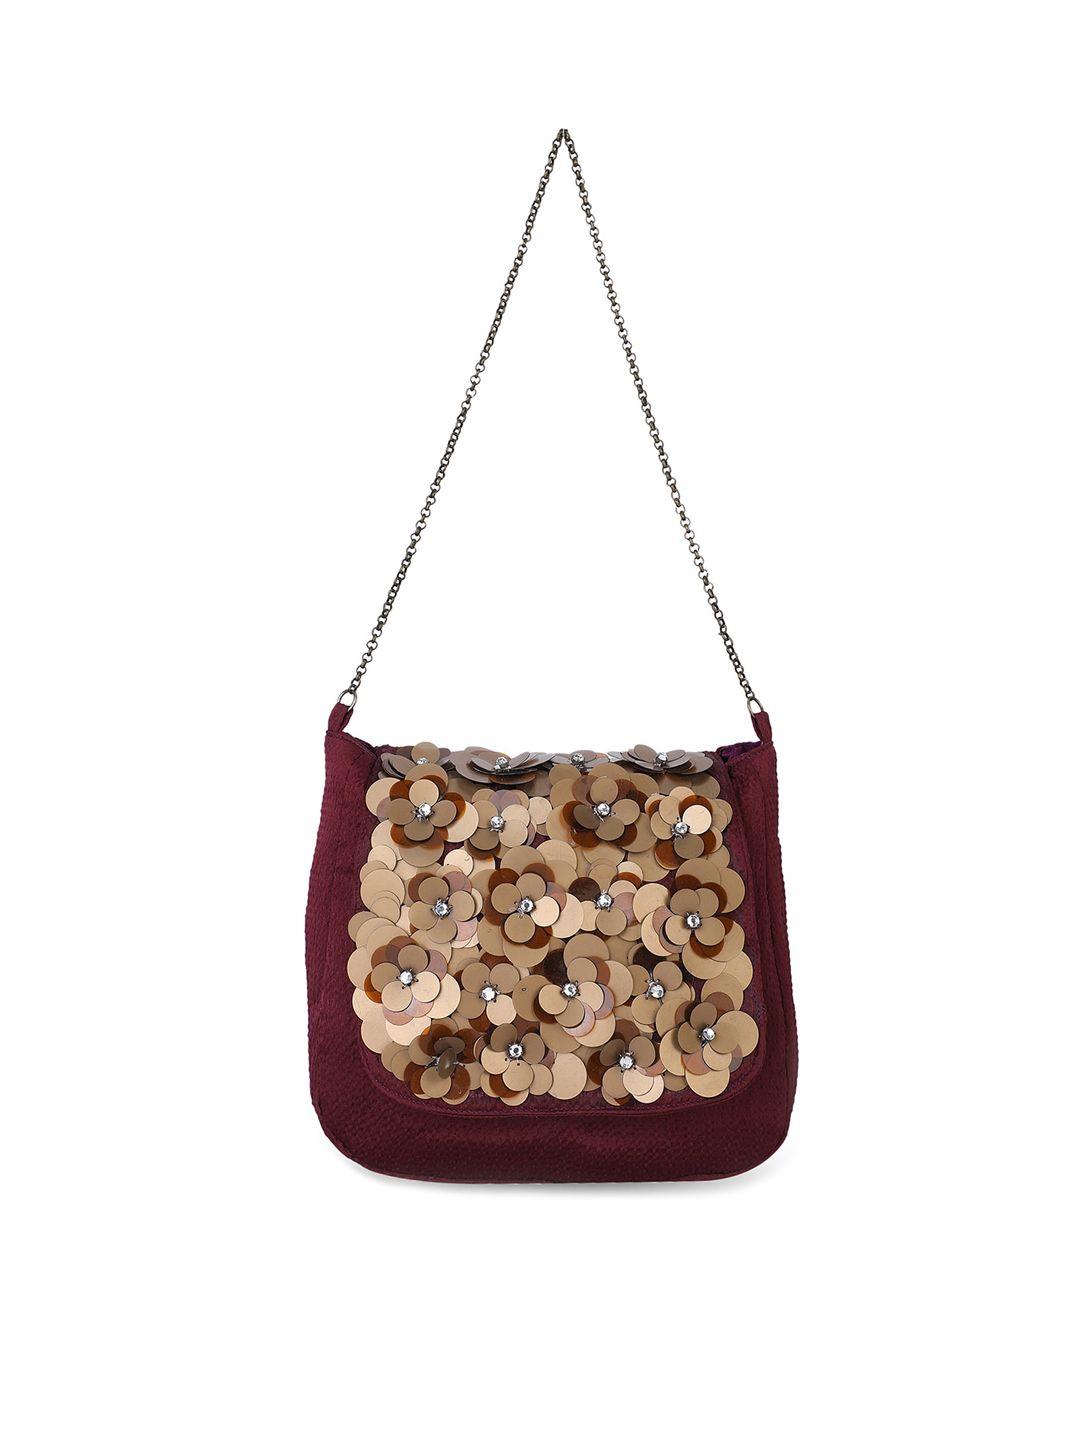 rediscover fashion embellished structured sling bag